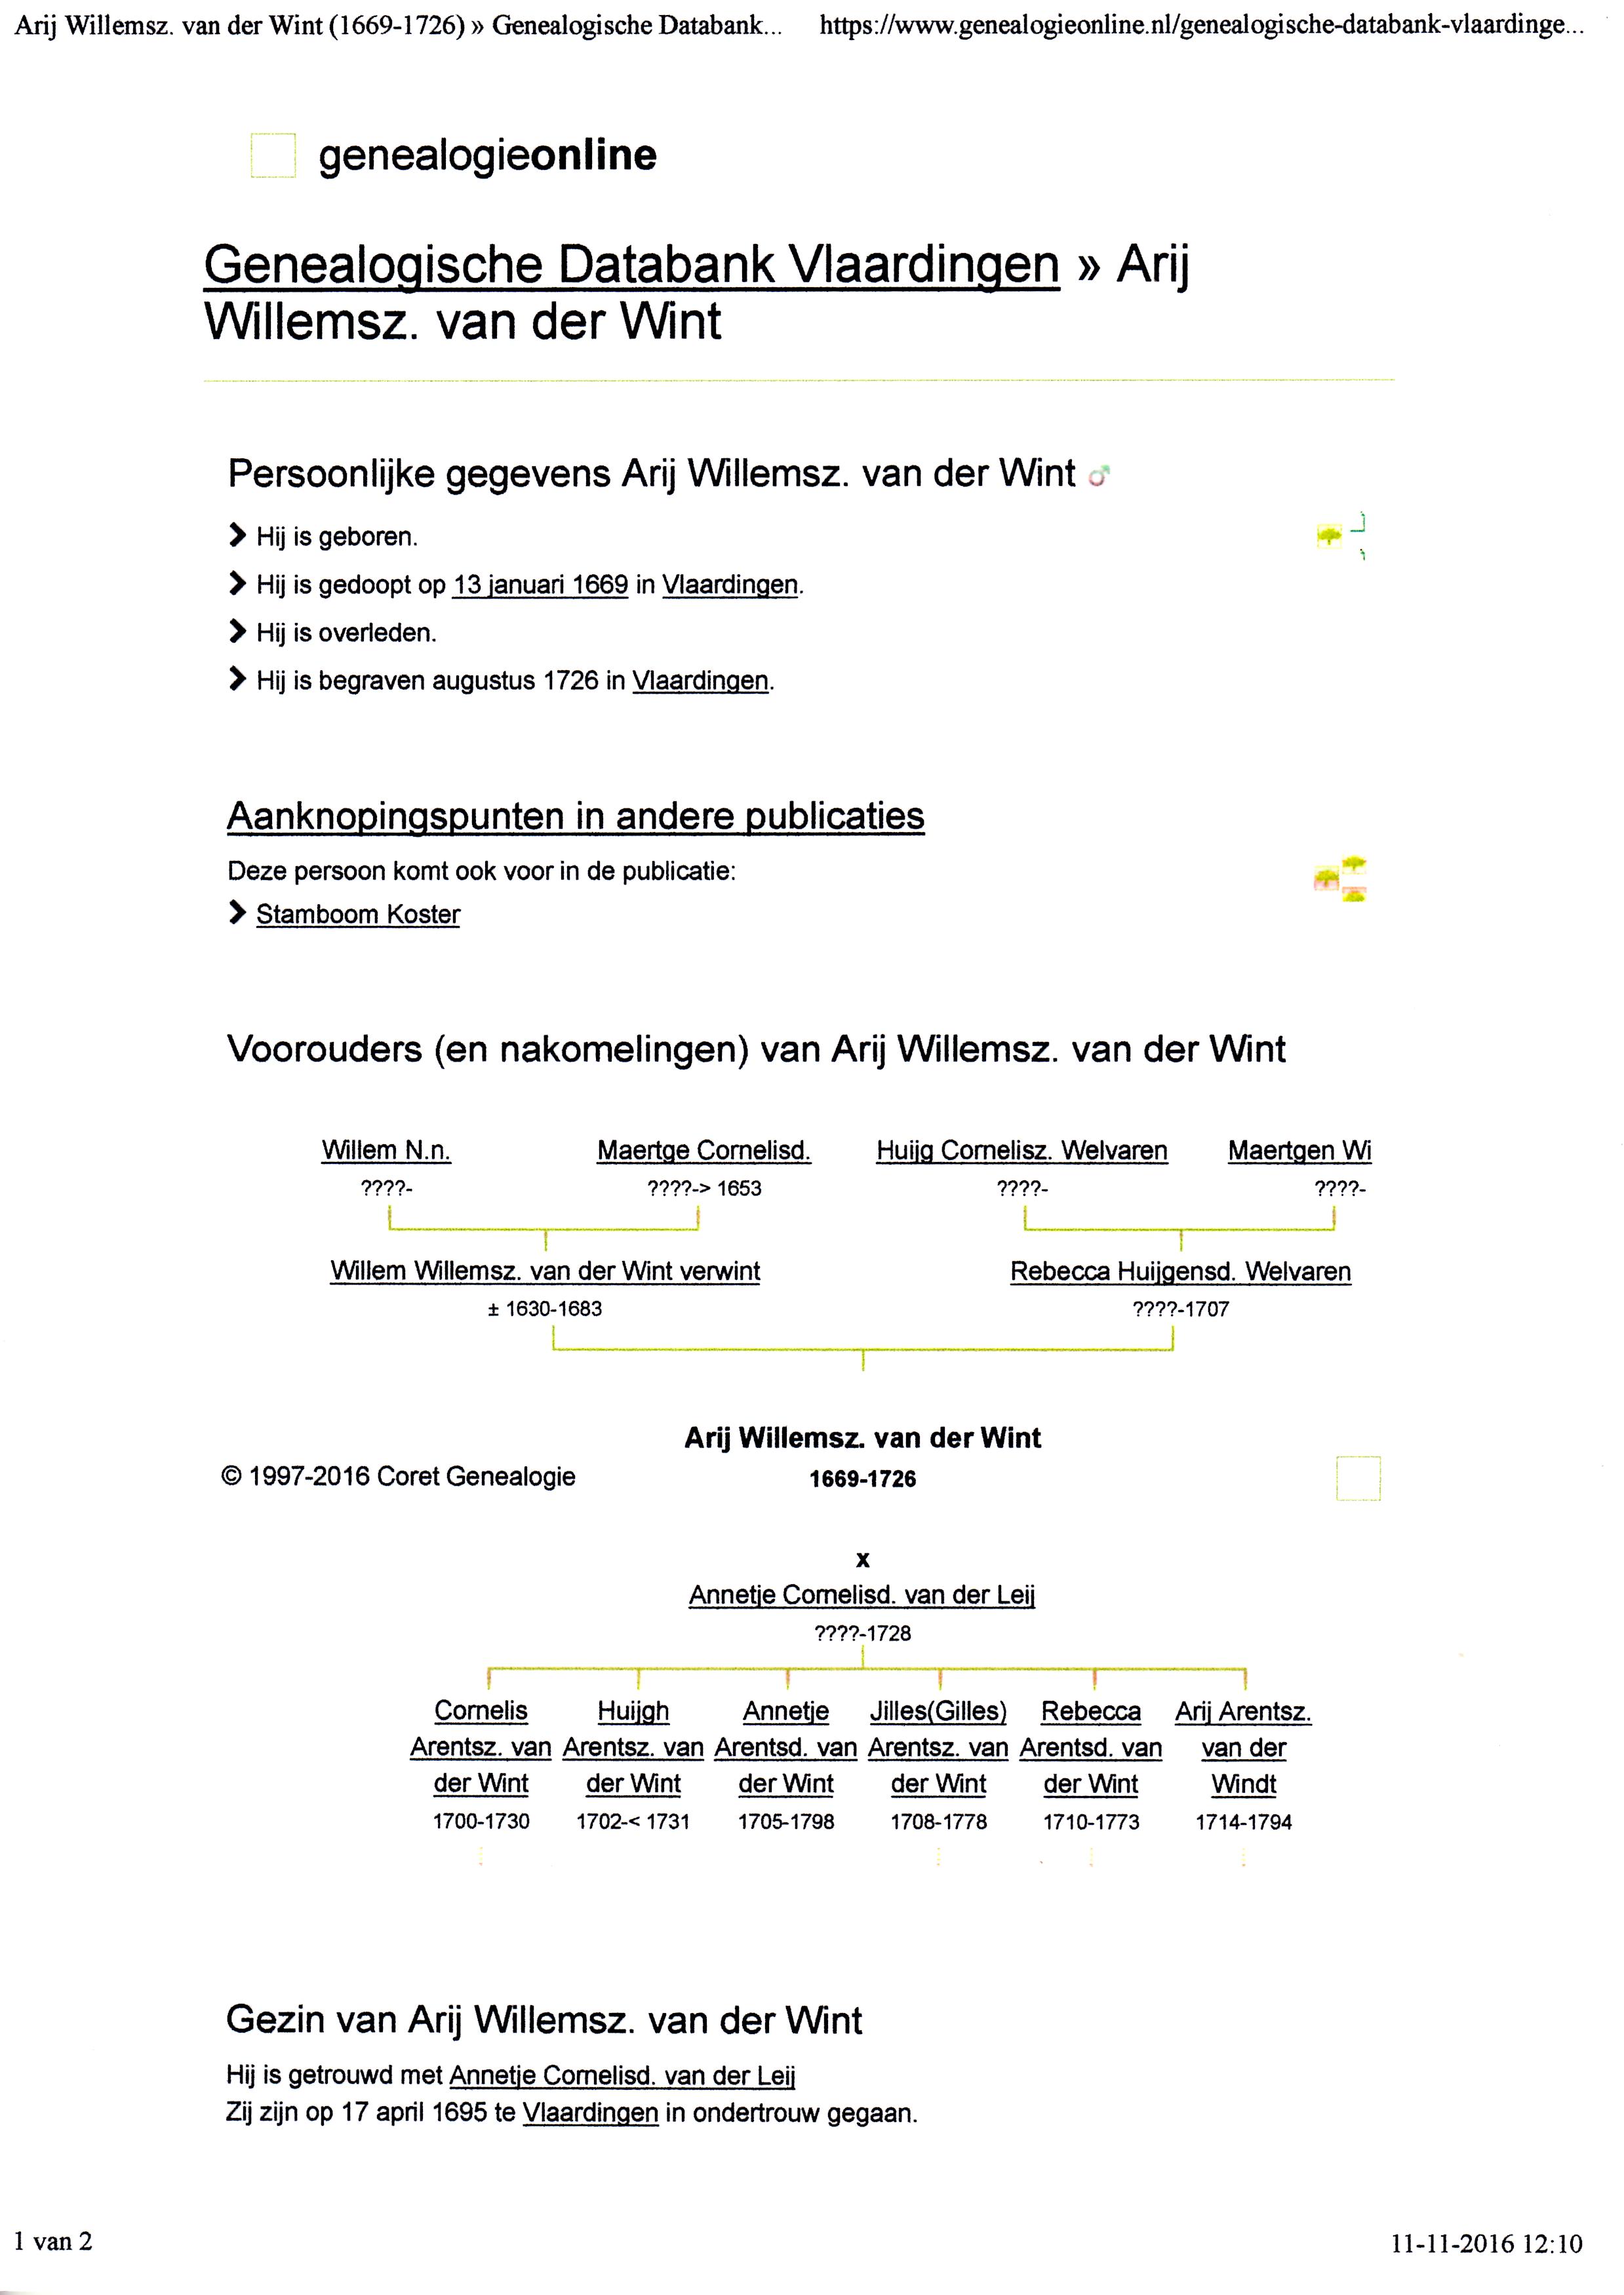 1669-01-13-genealogische-databank-vlaardingen-over-arij-willemsz-van-der-wint